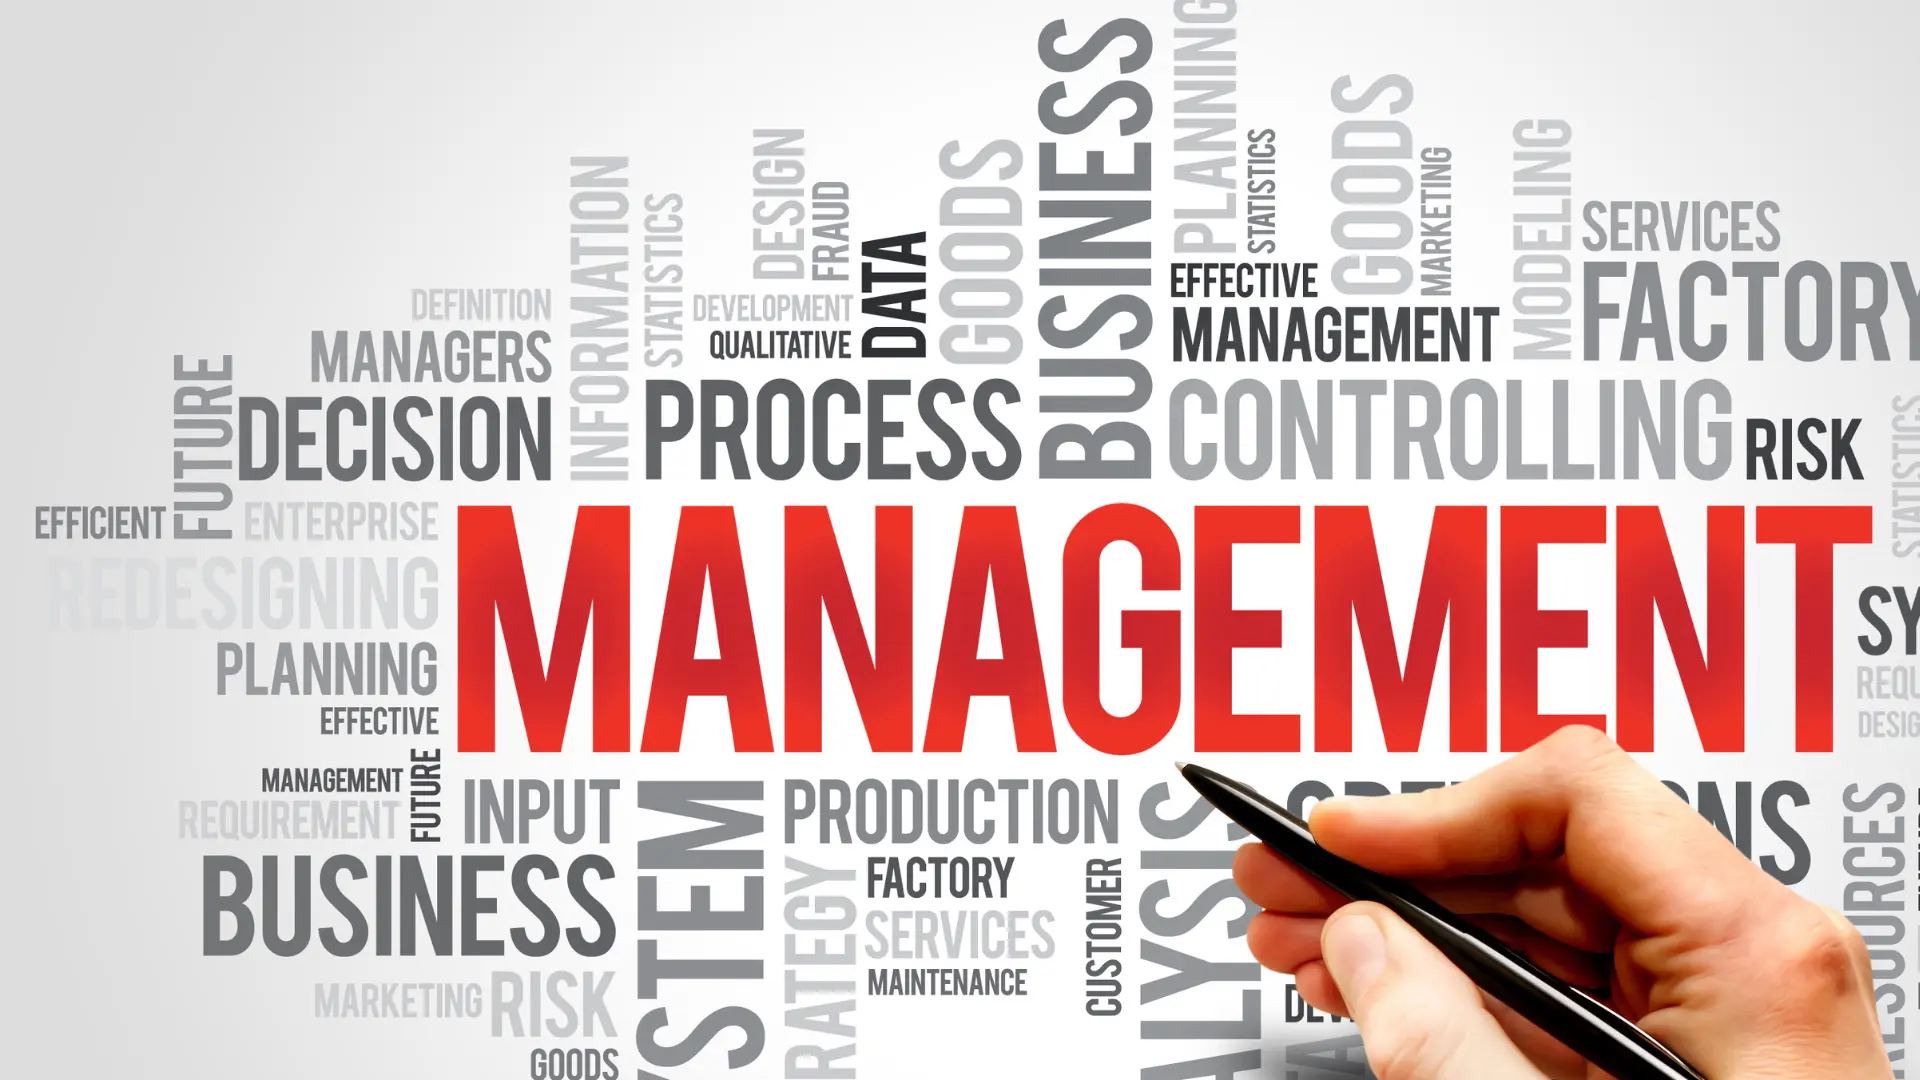 Nuage de mots sur le monde du management, pour illustrer le domaine du management bienveillant.